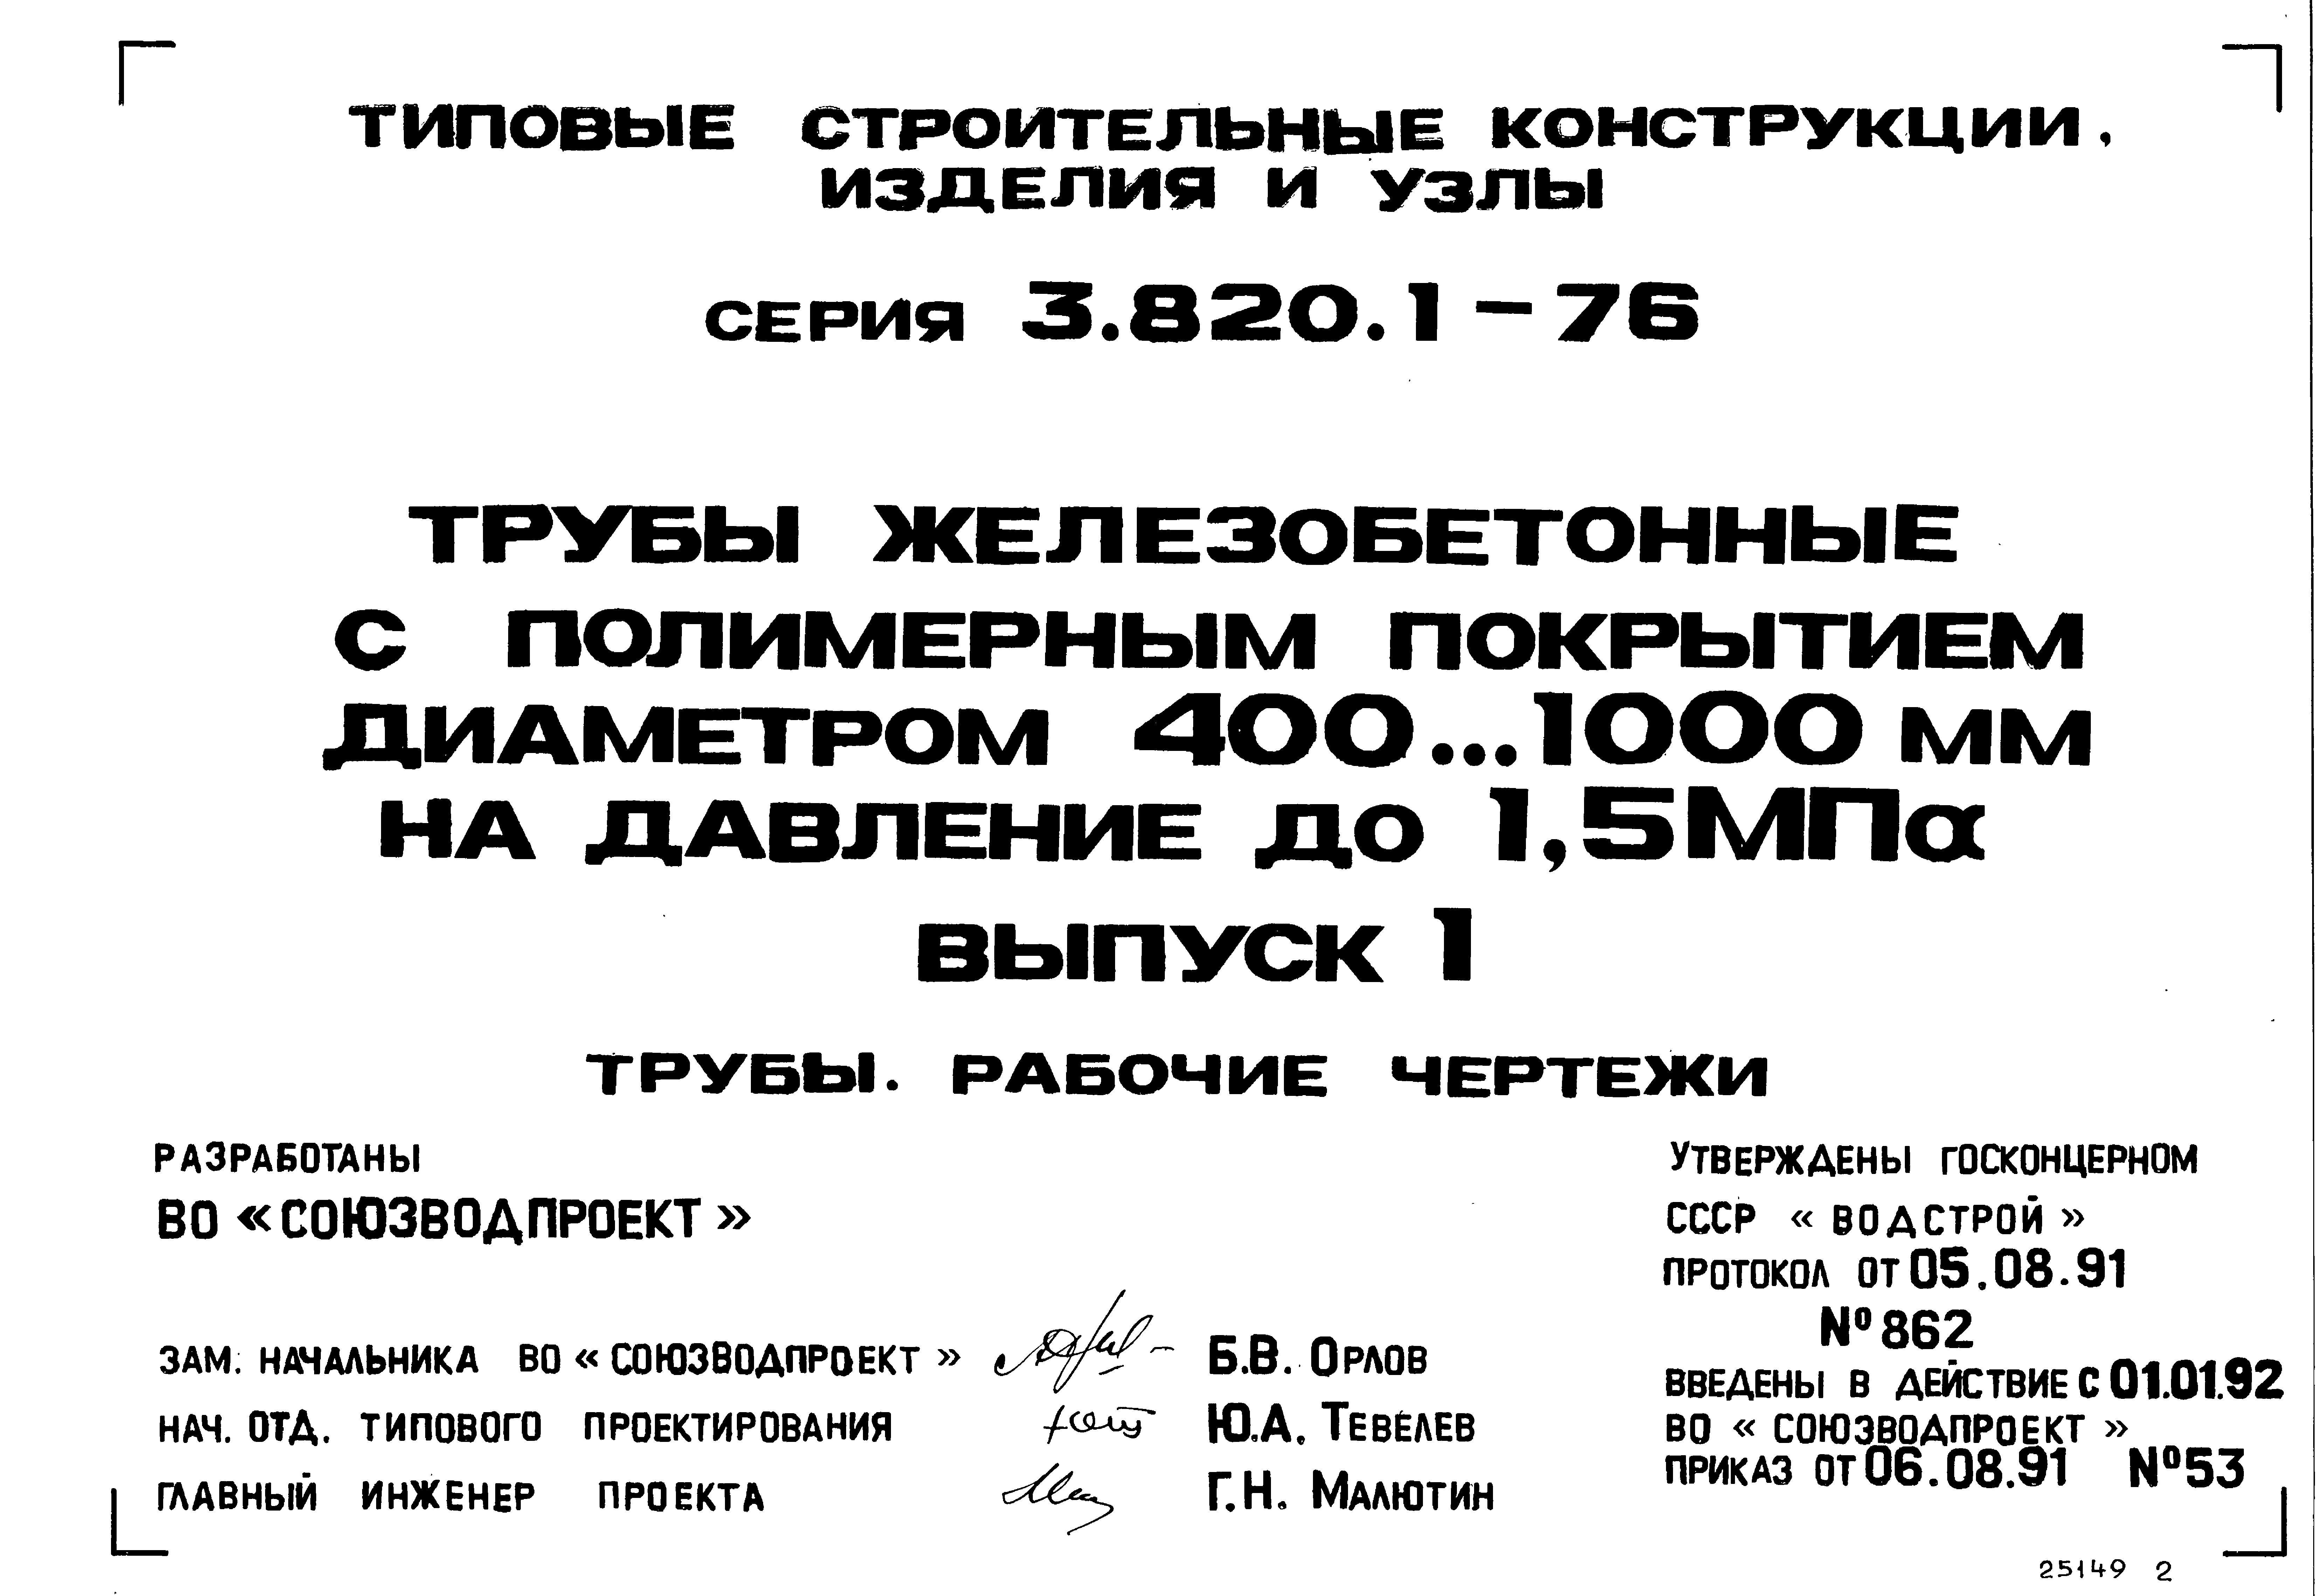 Серия 3.820.1-76